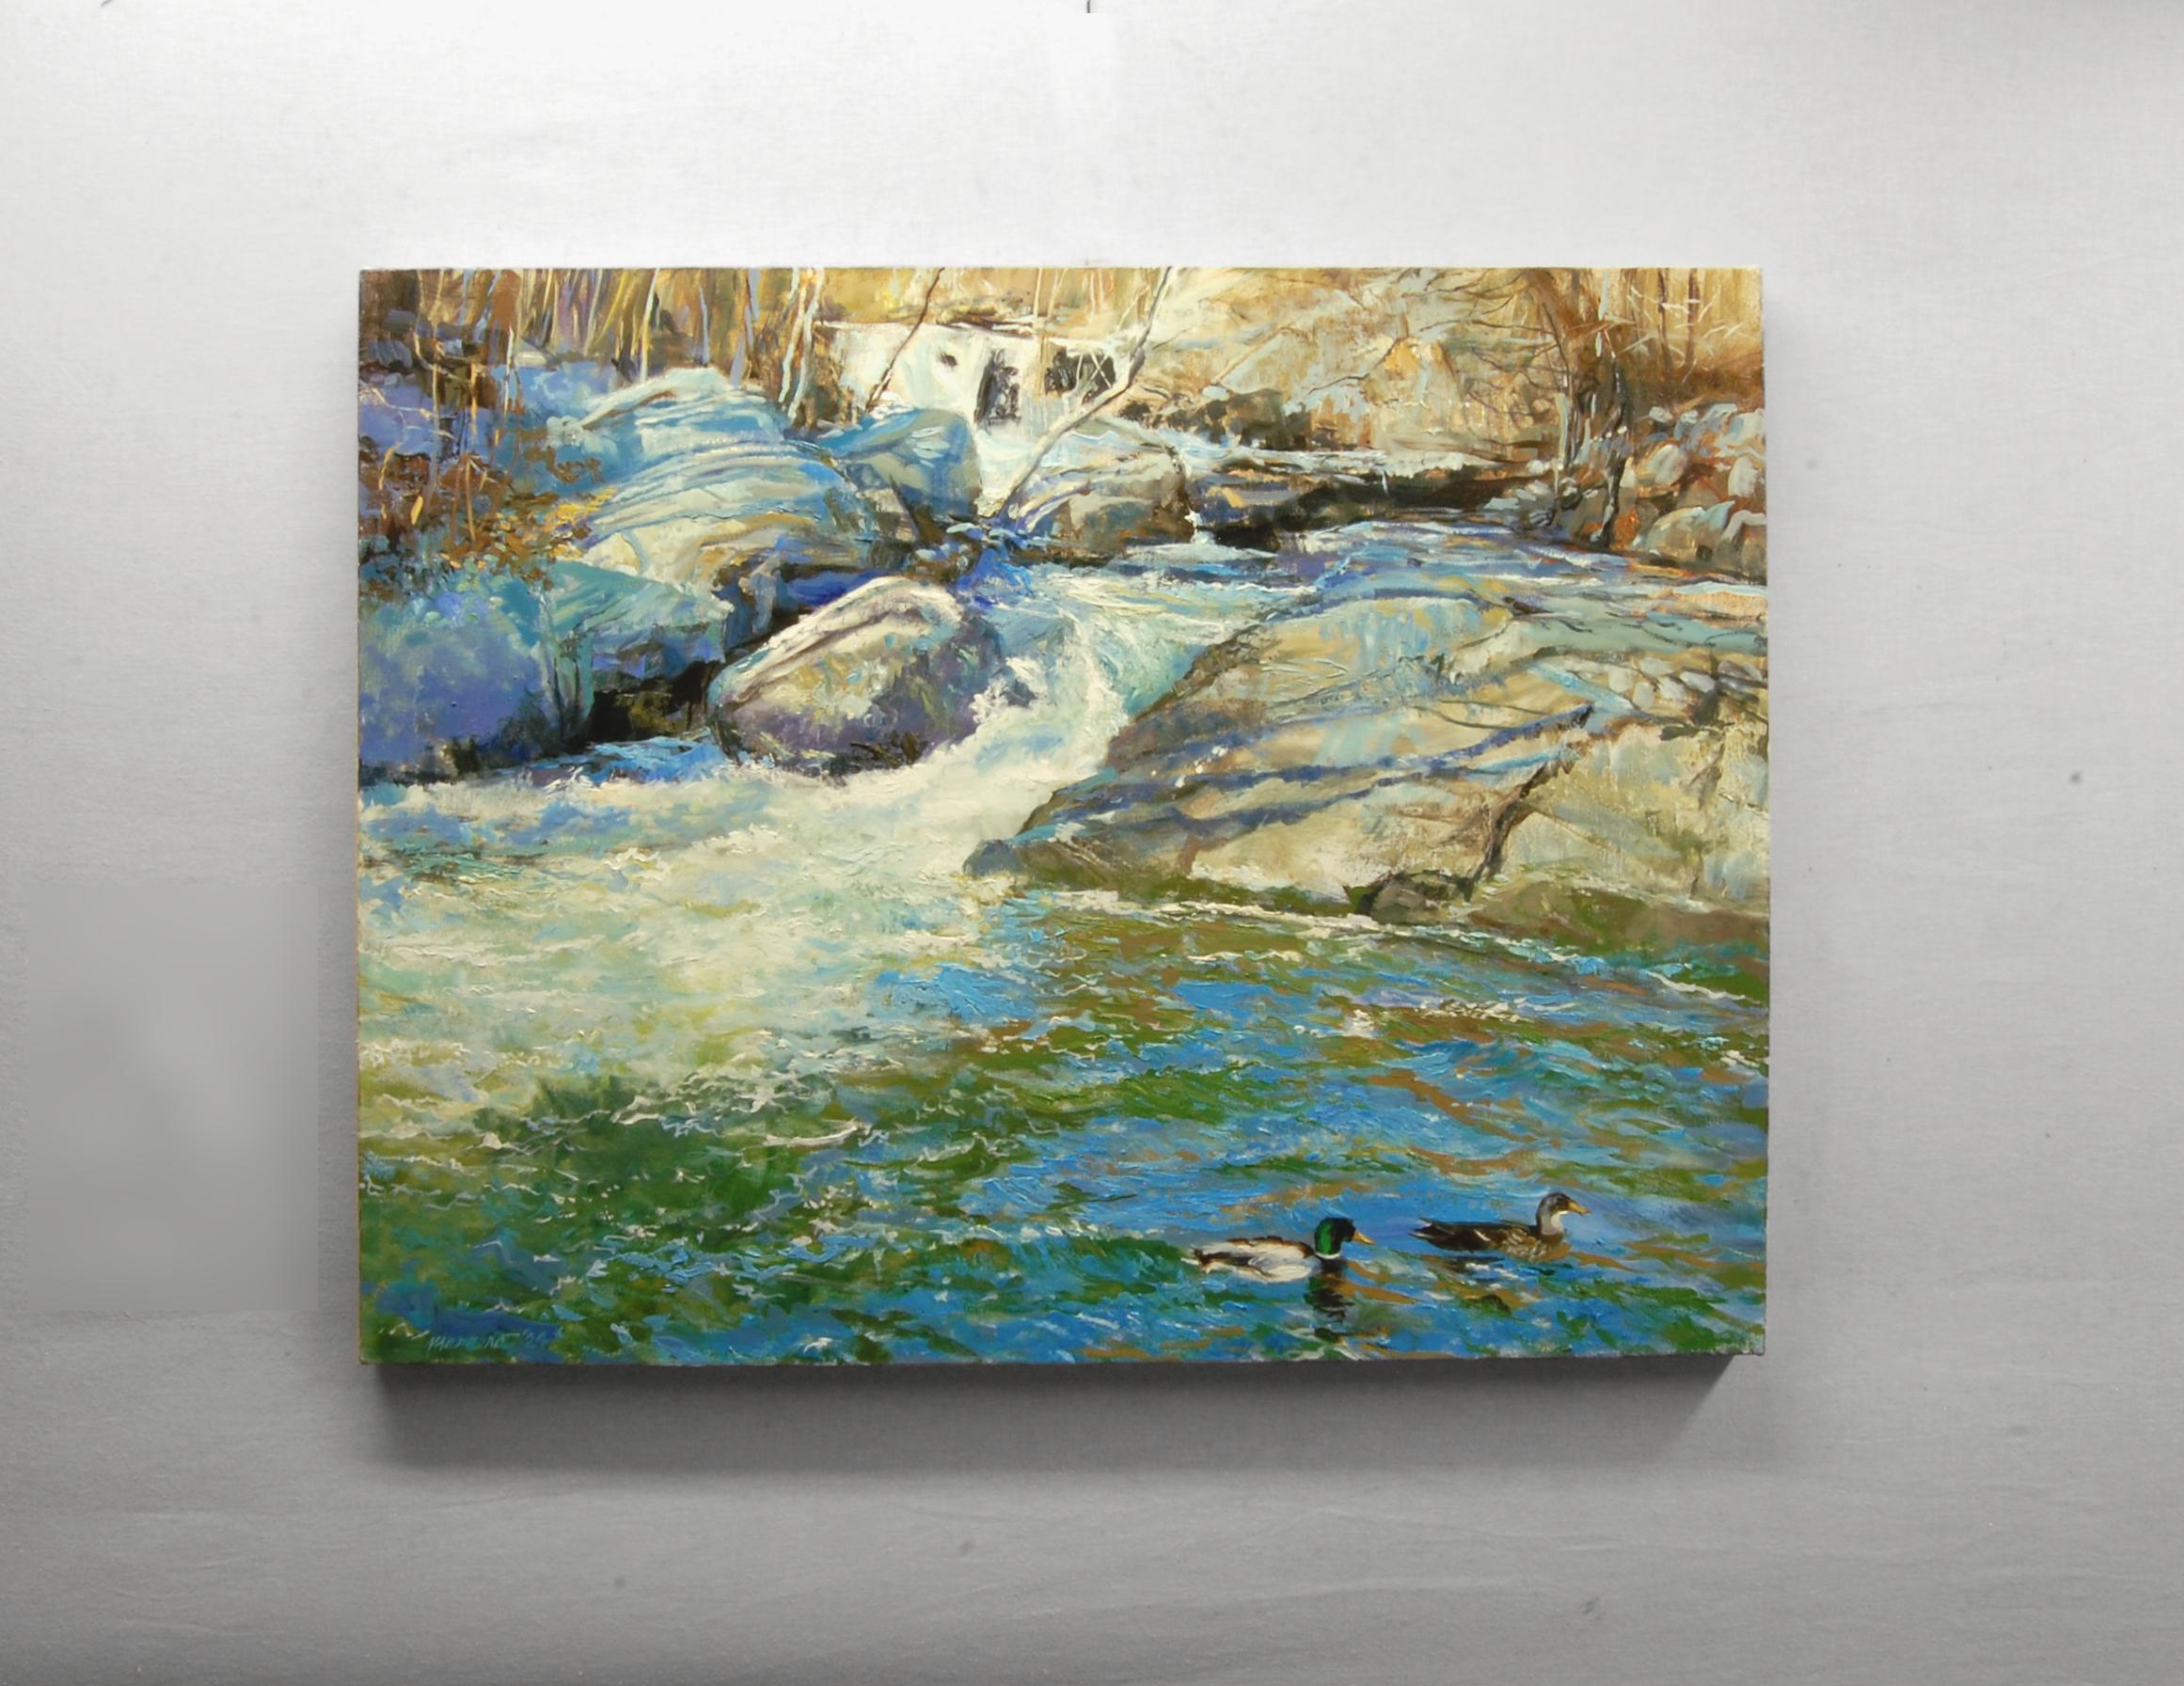 <p>Kommentare des Künstlers<br>Dieses Gemälde zeigt den Rockaway River in Boonton, New Jersey, an einem Tag mitten im Winter. Es zeigt mehrere Kaskaden, an denen sich der Fluss entlang seines mäandernden Verlaufs durch den Norden New Jerseys zu